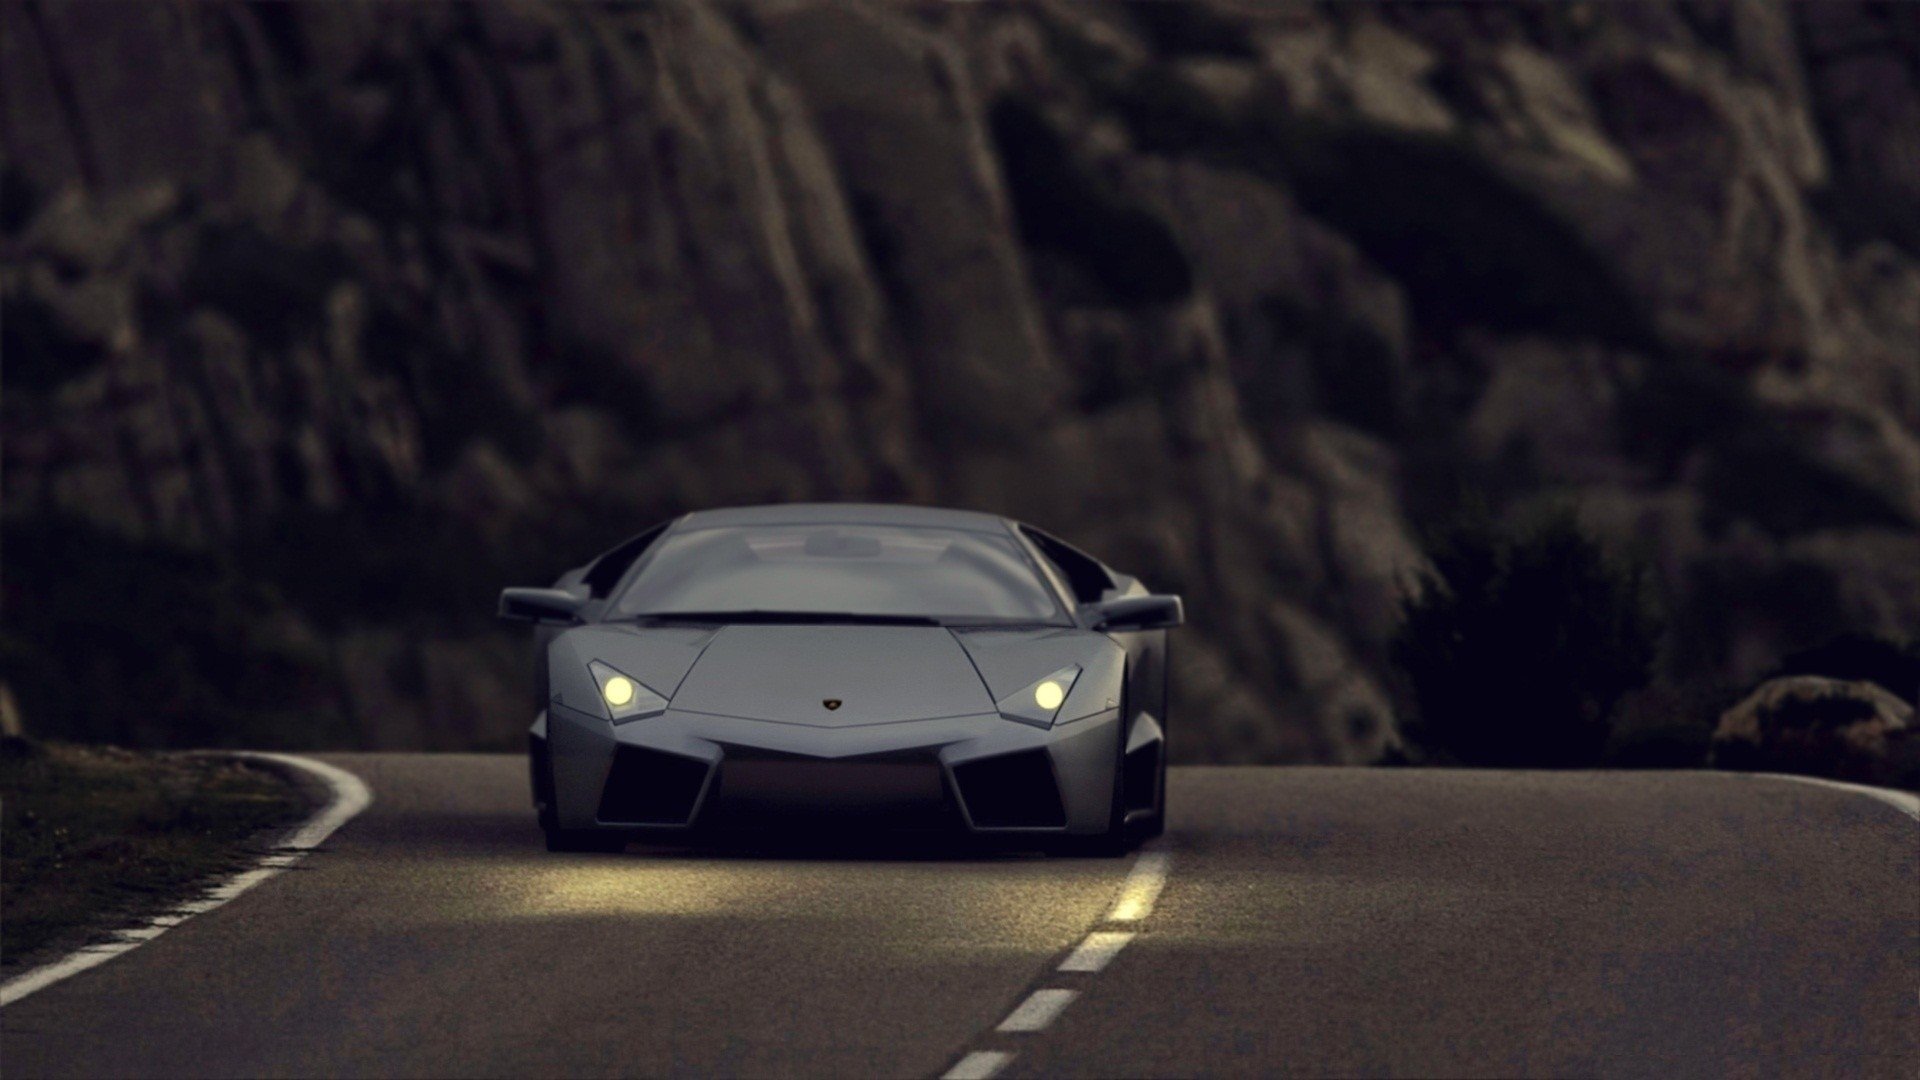 Lamborghini Reventon: Chiêm ngưỡng ngay siêu phẩm này với thiết kế đỉnh cao và sức mạnh khủng khiếp. Được ra mắt năm 2007, Lamborghini Reventon chắc chắn sẽ làm cơn sốt cho các fan hâm mộ xe hơi và người yêu tốc độ.